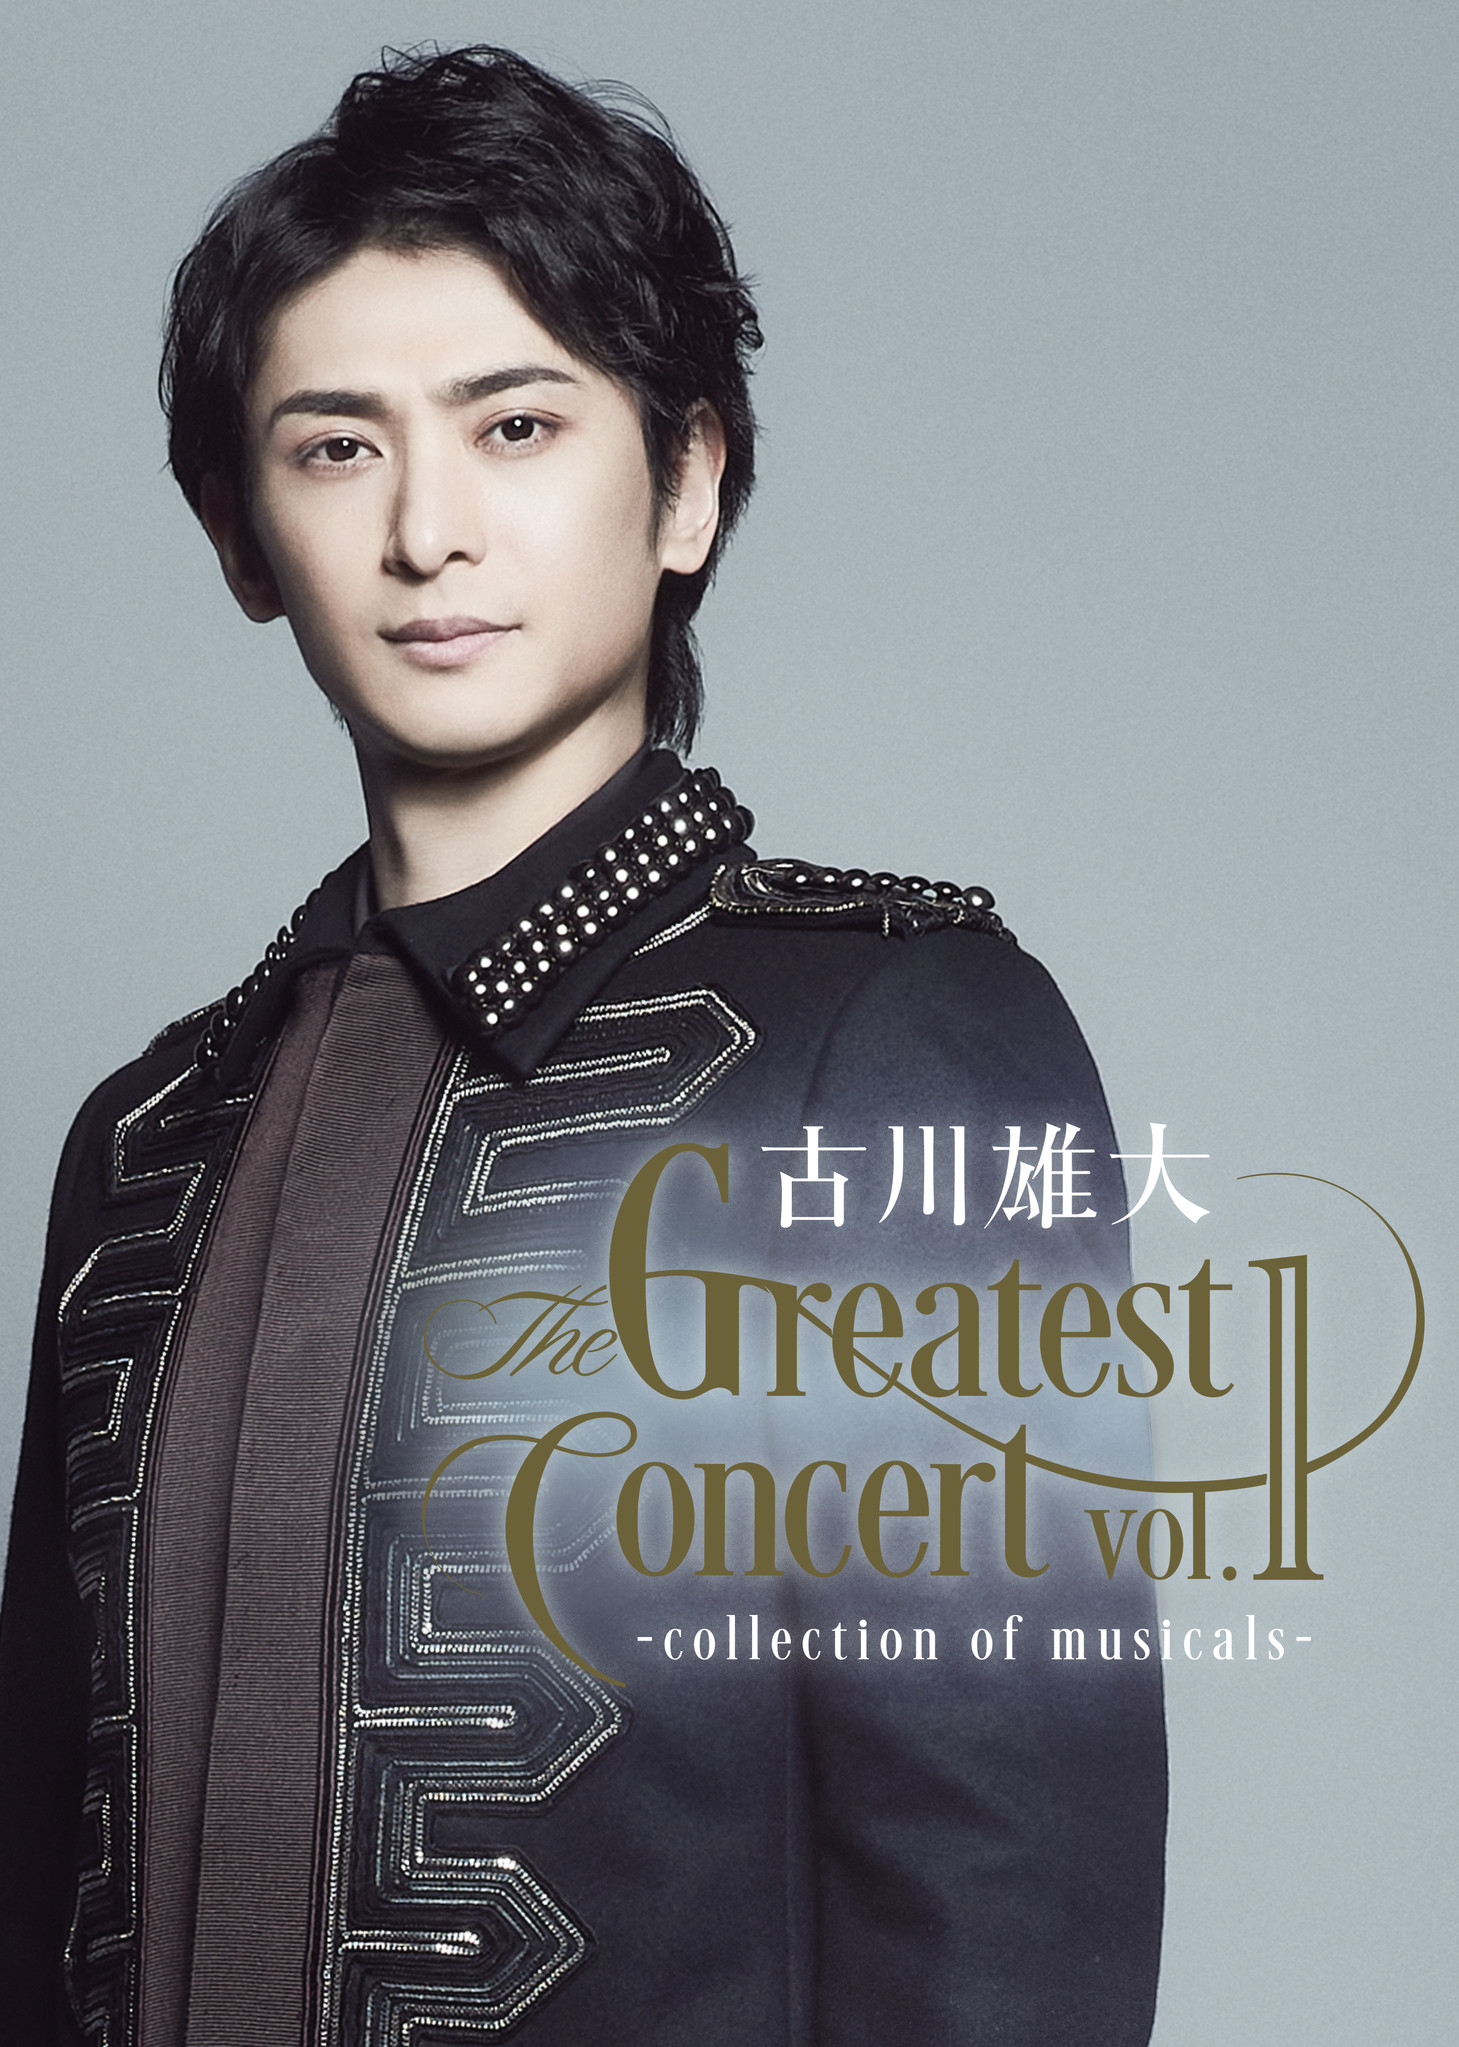 古川雄大 The Greatest concert vol.1 Blu-ray - ミュージック